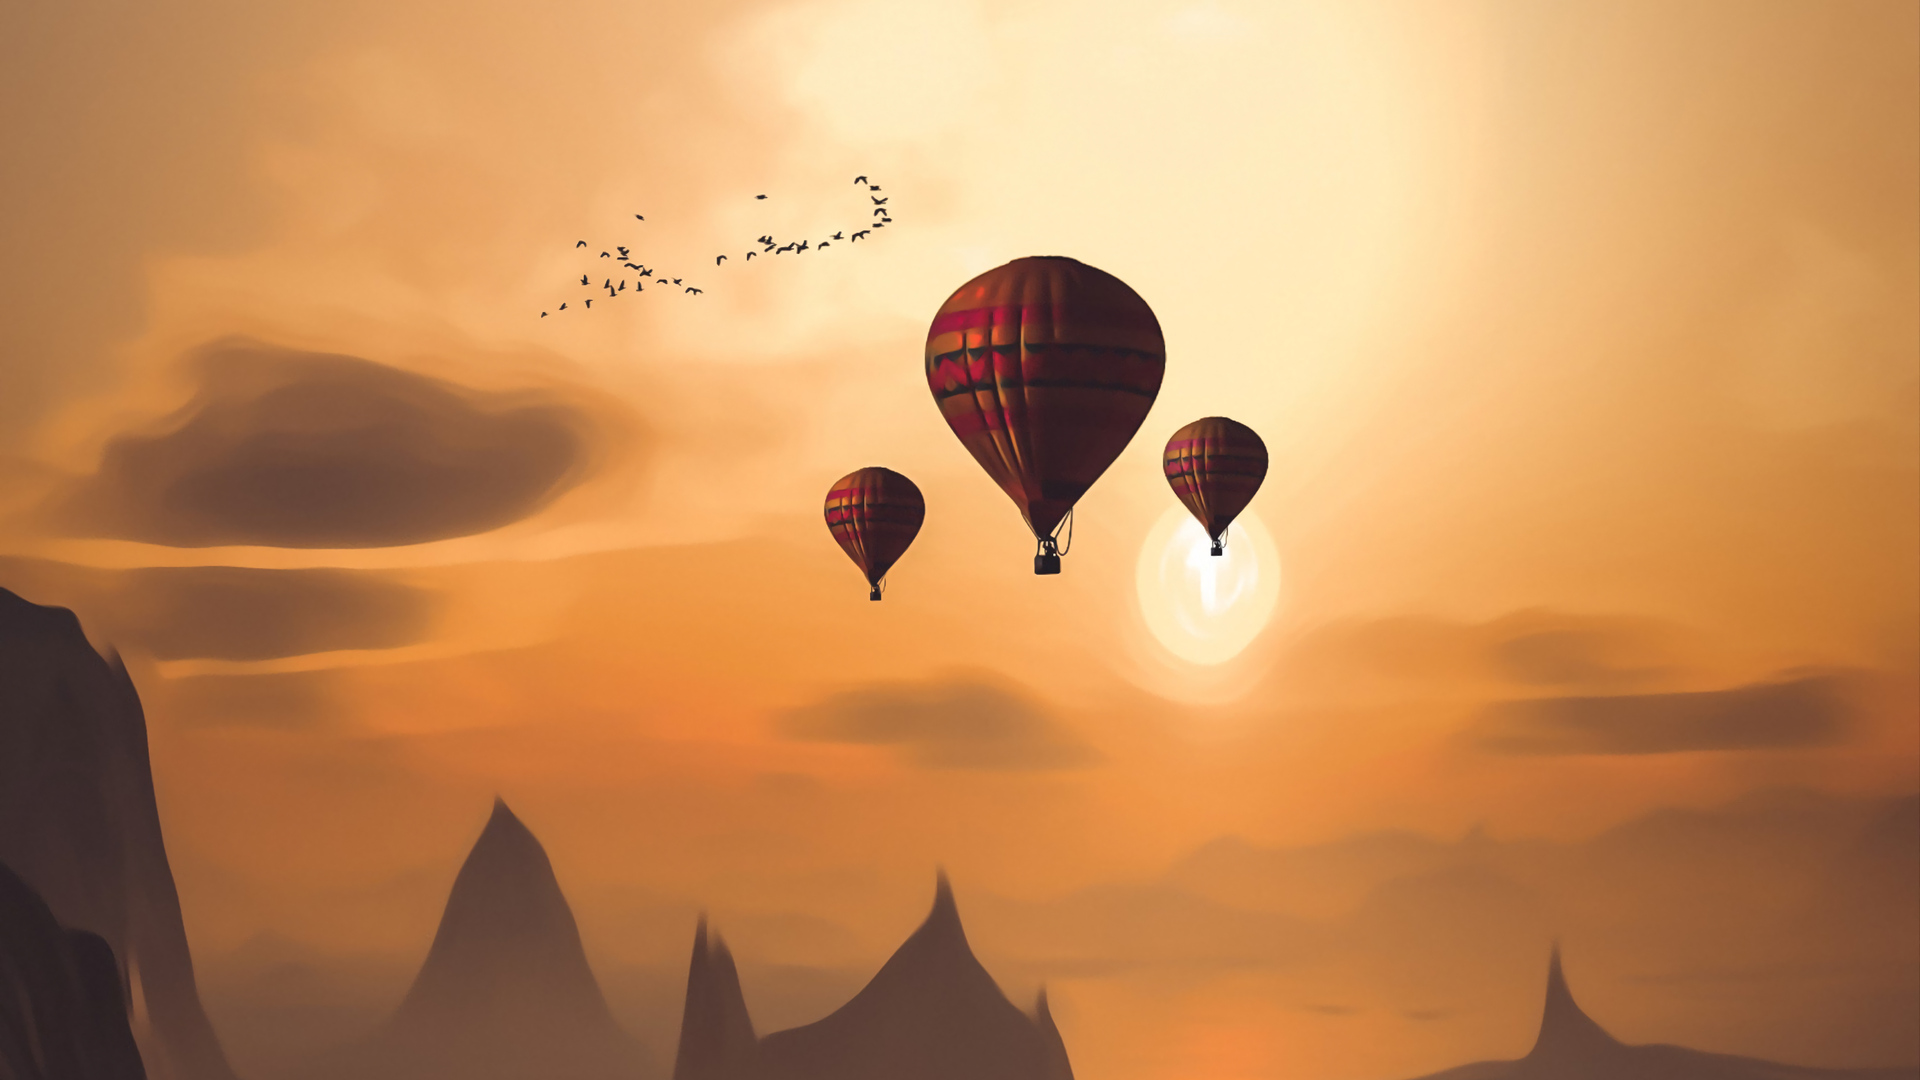 HD Air Balloon PC Wallpaper